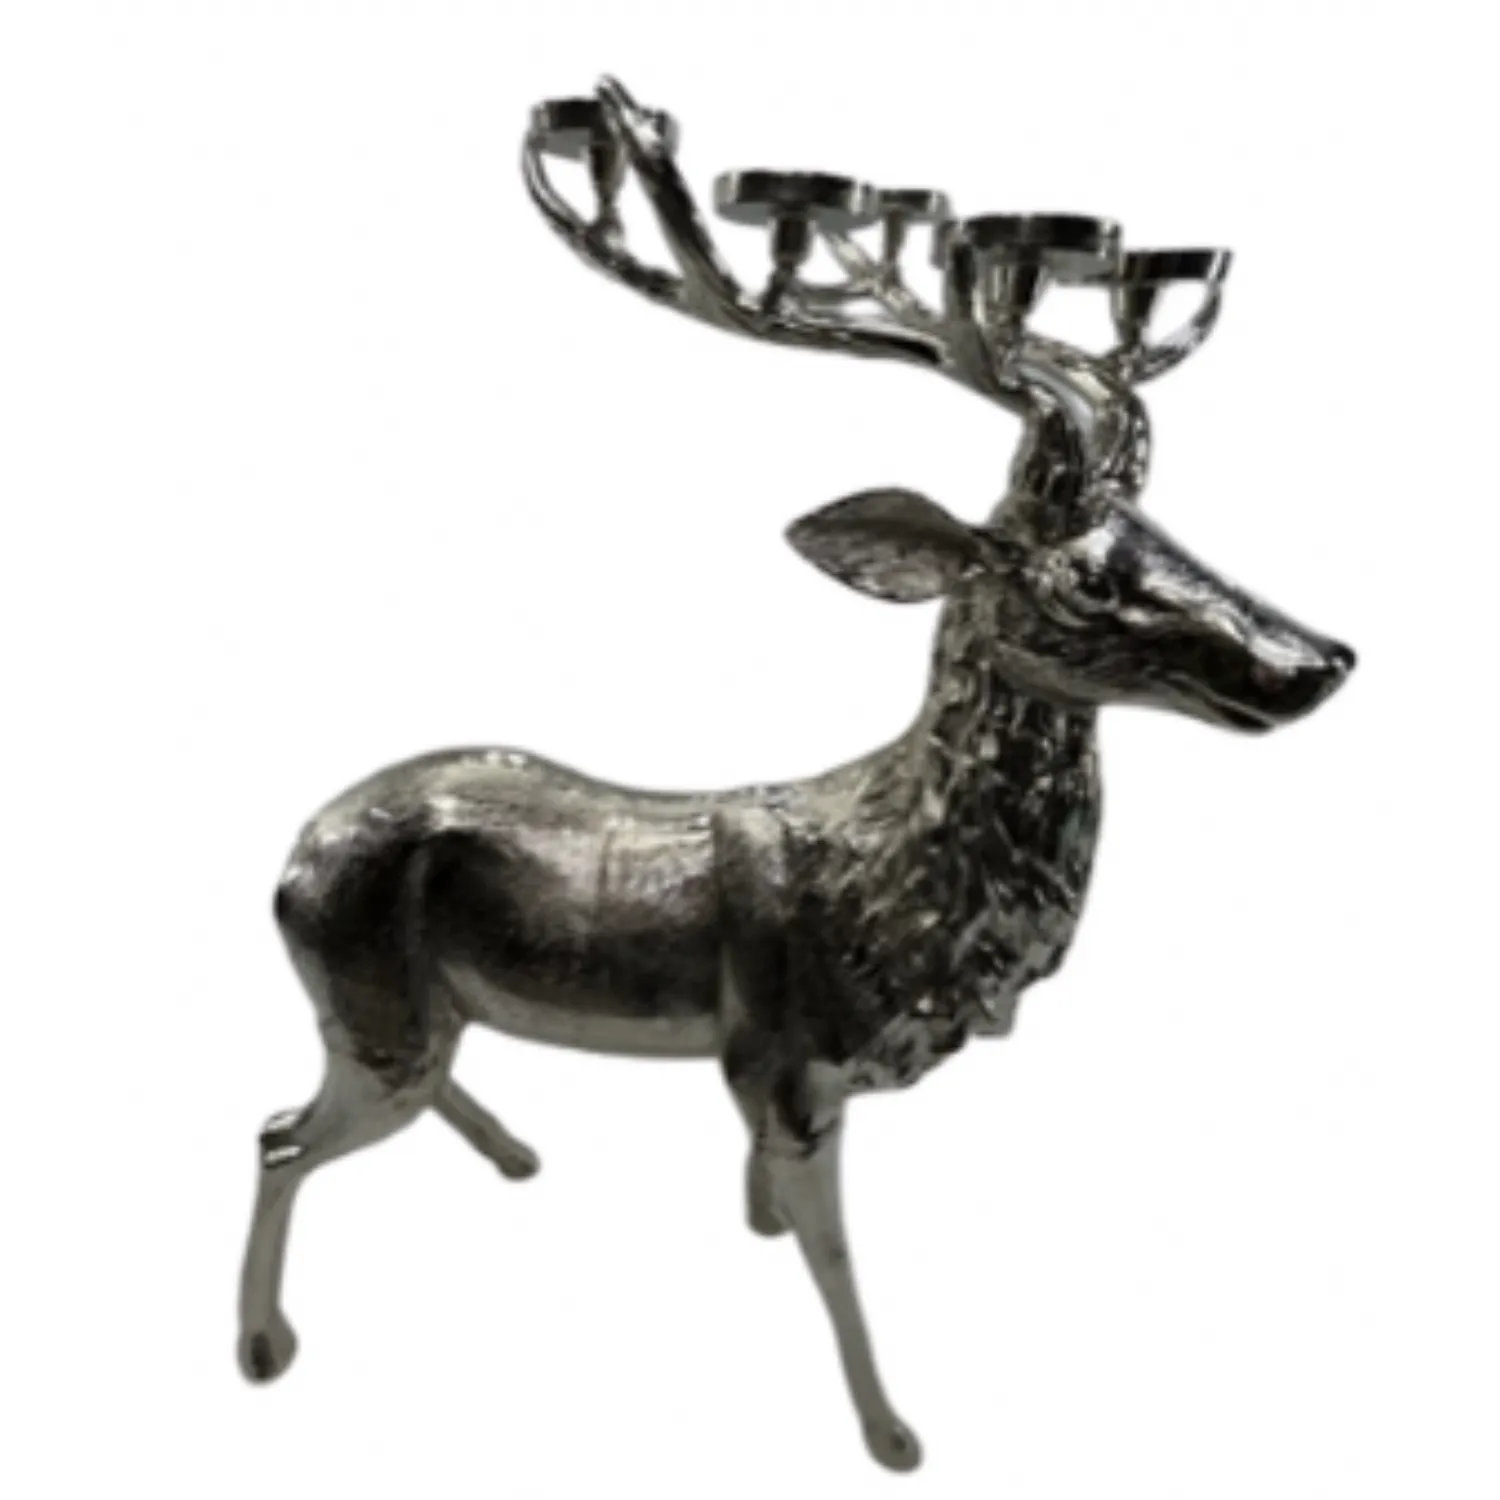 Deer H80cm